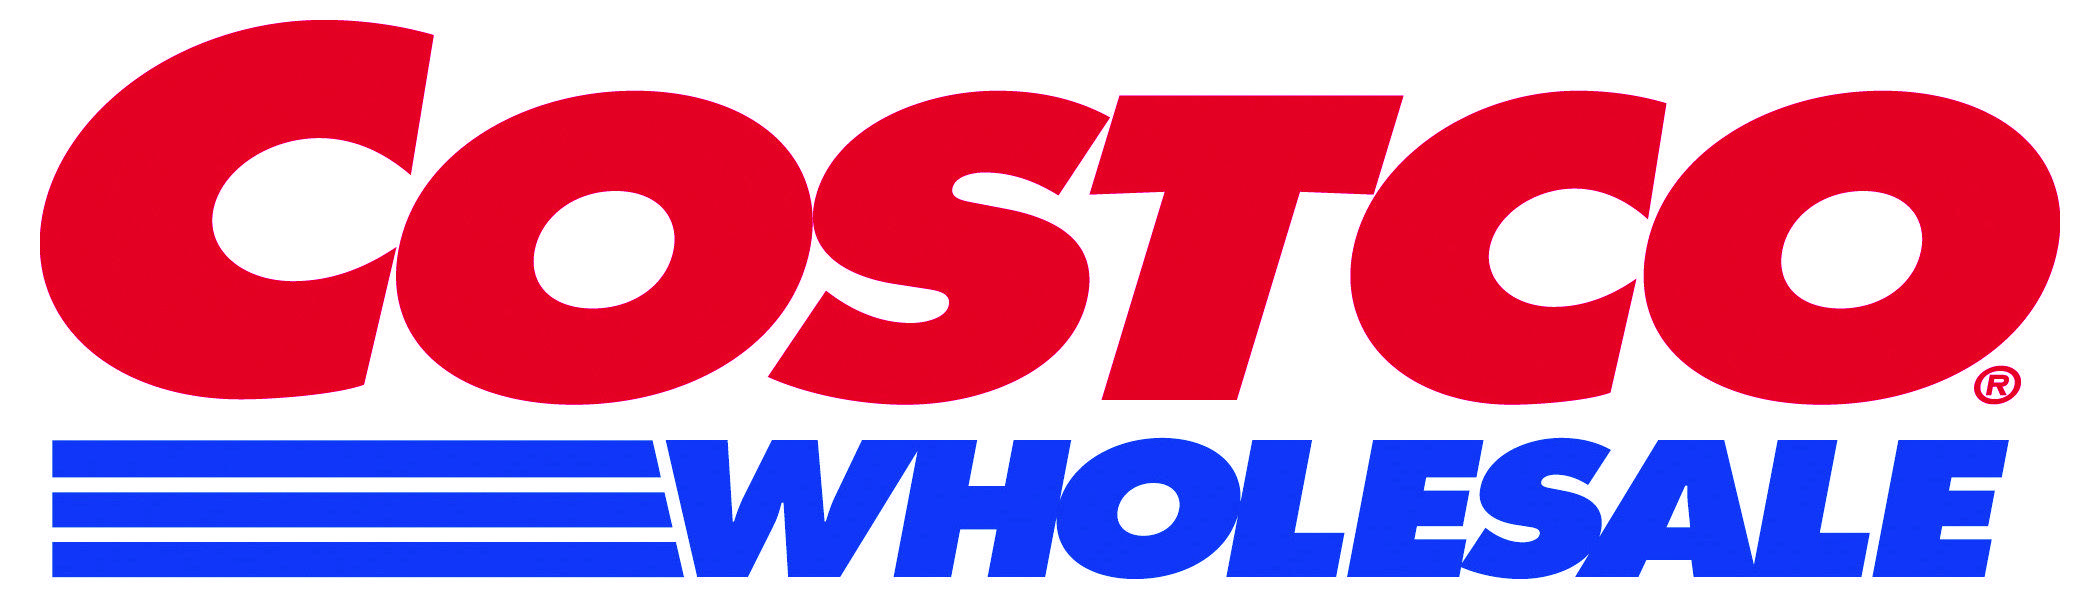 Costco Club Logo - Wholesale Products Australia | Costco